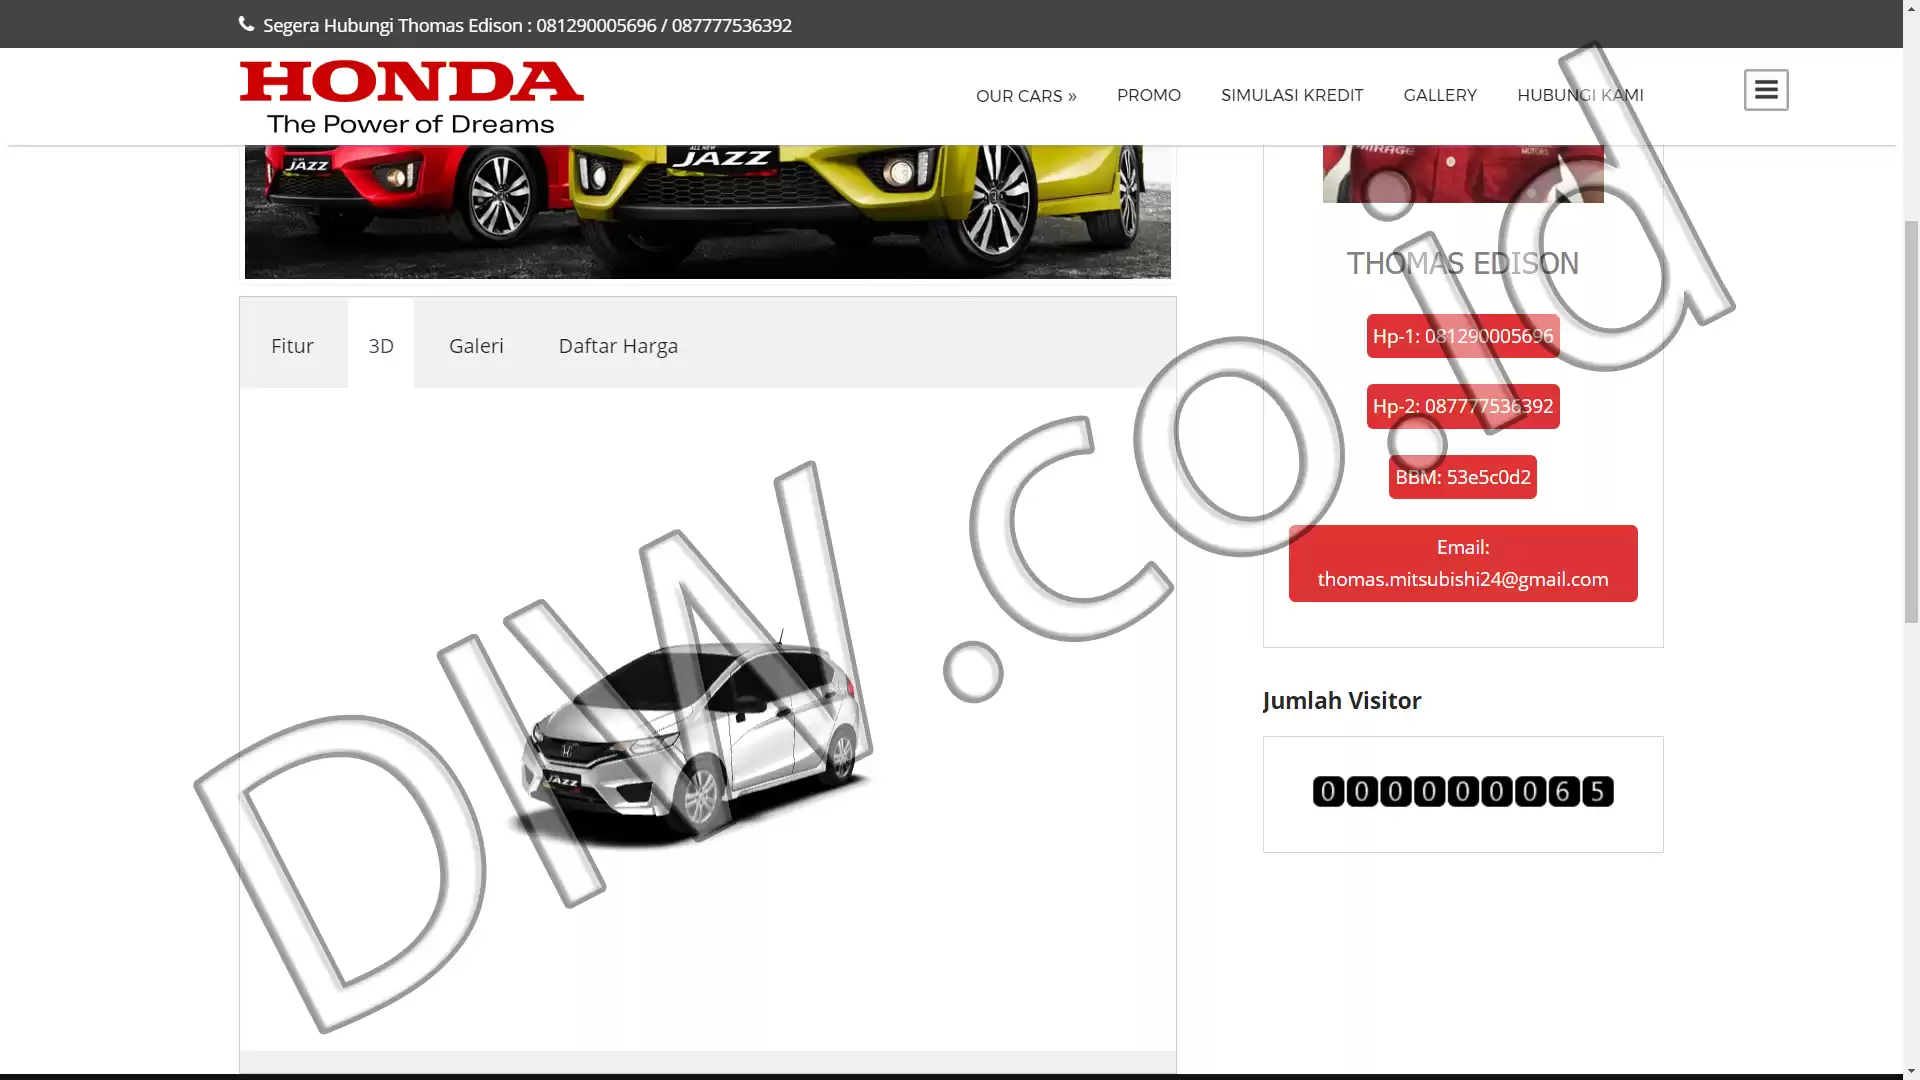 Portfolio - Promo Honda Mobil - DIW.co.id (Digital In Website) Jasa Pembuatan Website dan Program Skripsi